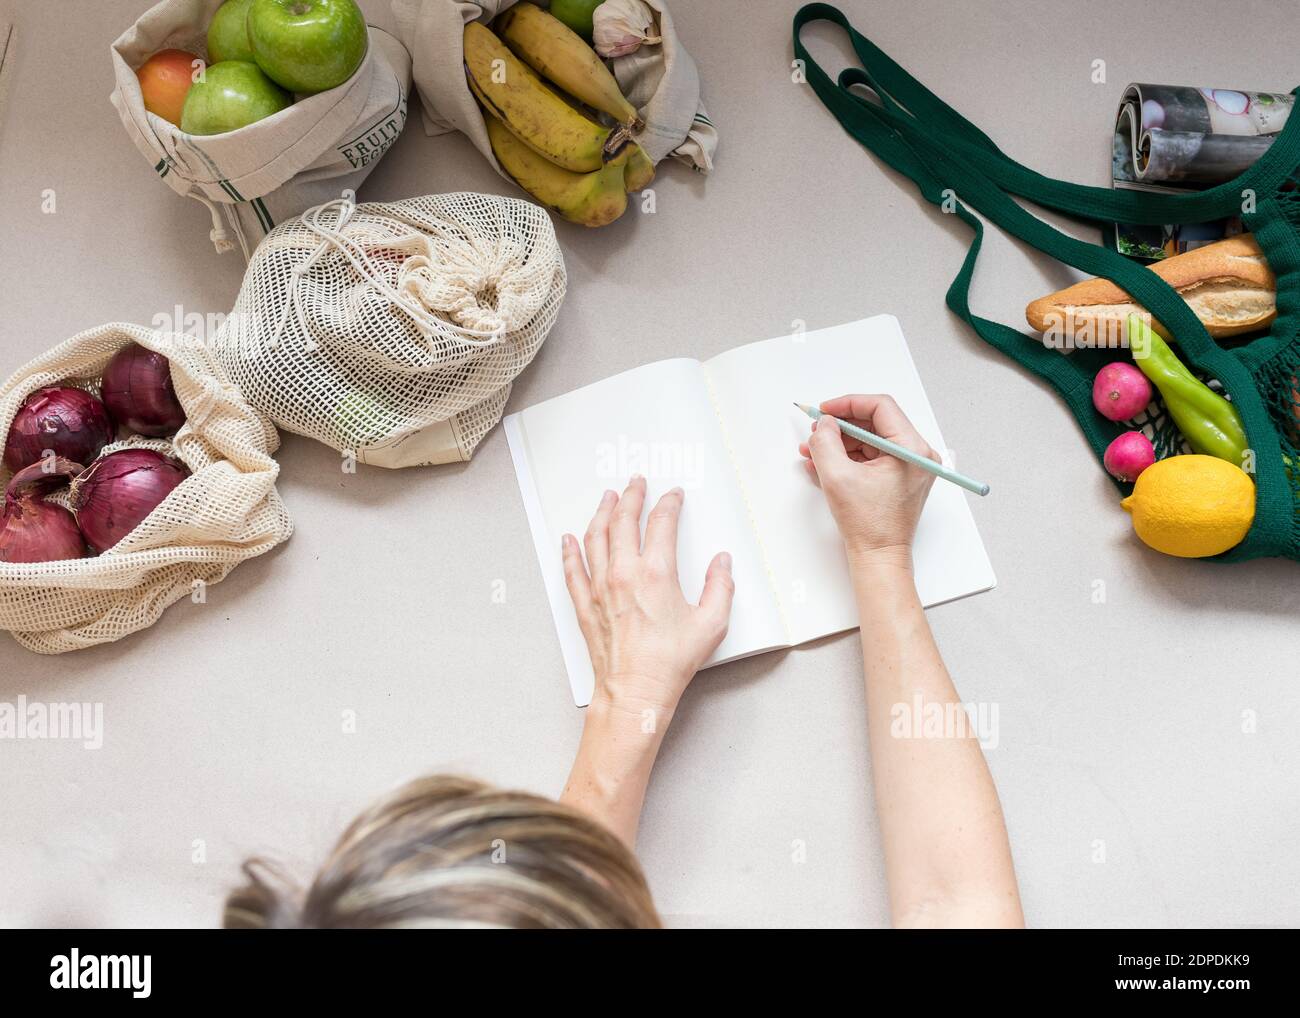 Femme faisant une liste d'achats sur un bloc-notes blanc. Beaucoup de fruits et légumes sains restent à l'intérieur de sacs écologiques durables. Banque D'Images